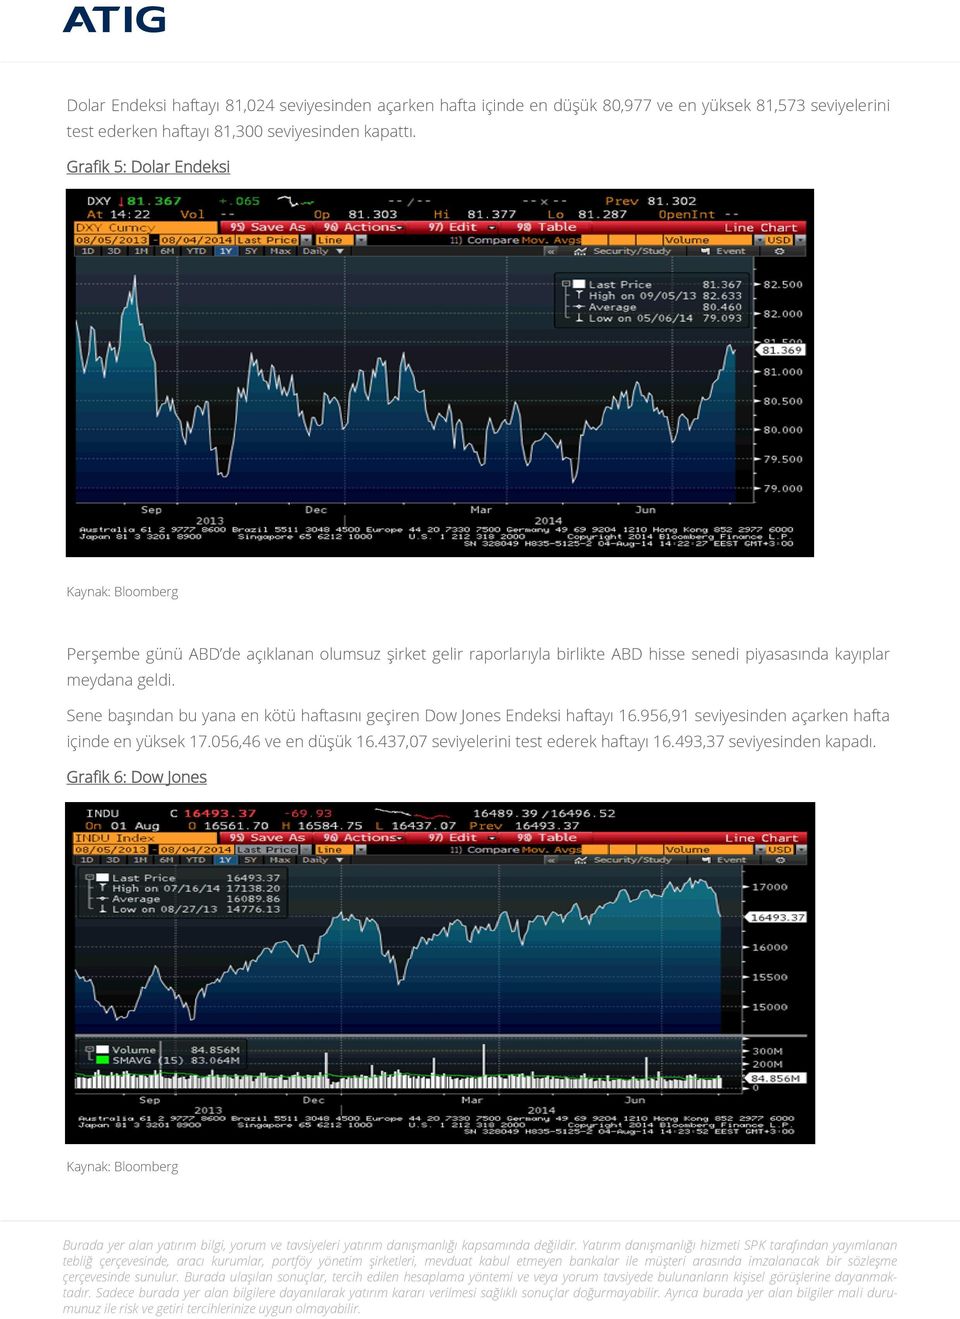 Grafik 5: Dolar Endeksi Perşembe günü ABD de açıklanan olumsuz şirket gelir raporlarıyla birlikte ABD hisse senedi piyasasında kayıplar